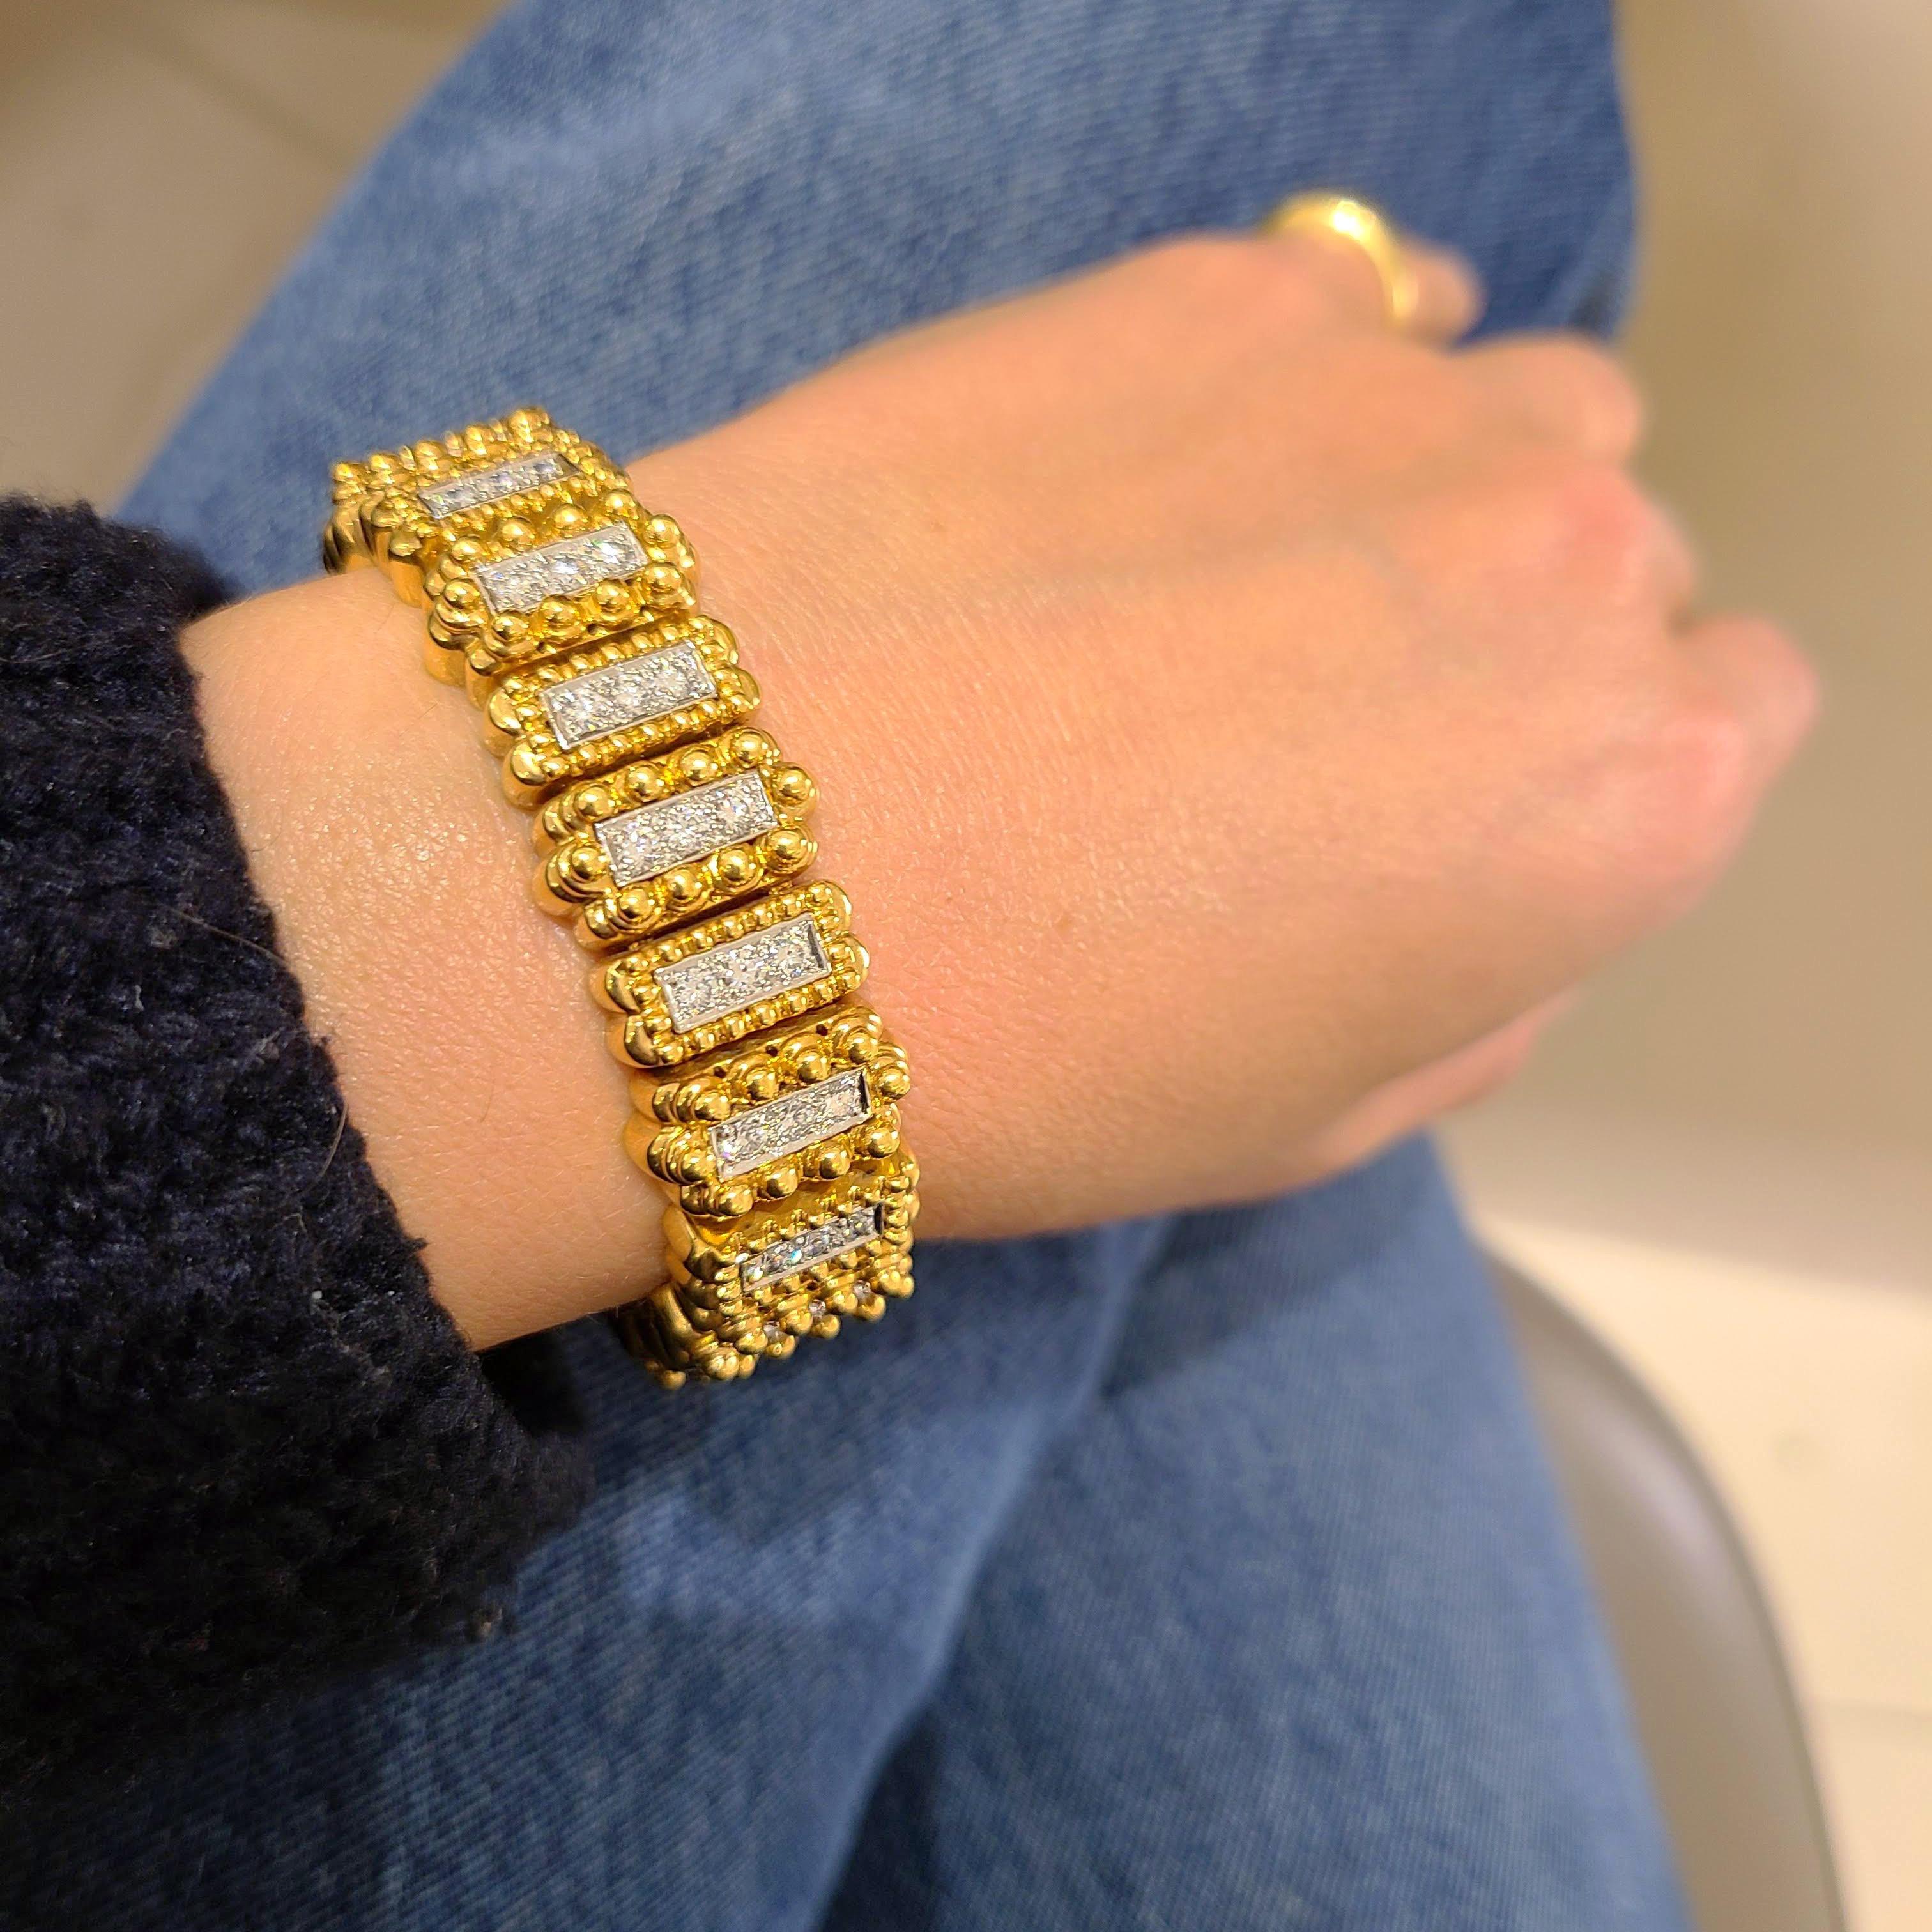 Ein wunderschönes Armband aus 18 Karat Gelbgold, Platin und Diamanten, entworfen von Tilson Gem Designs für ihre Chaavae Kollektion.
Das Armband besteht aus 22 einzelnen, erhabenen Perlenabschnitten aus Gelbgold. Jeder Abschnitt ist mit einer